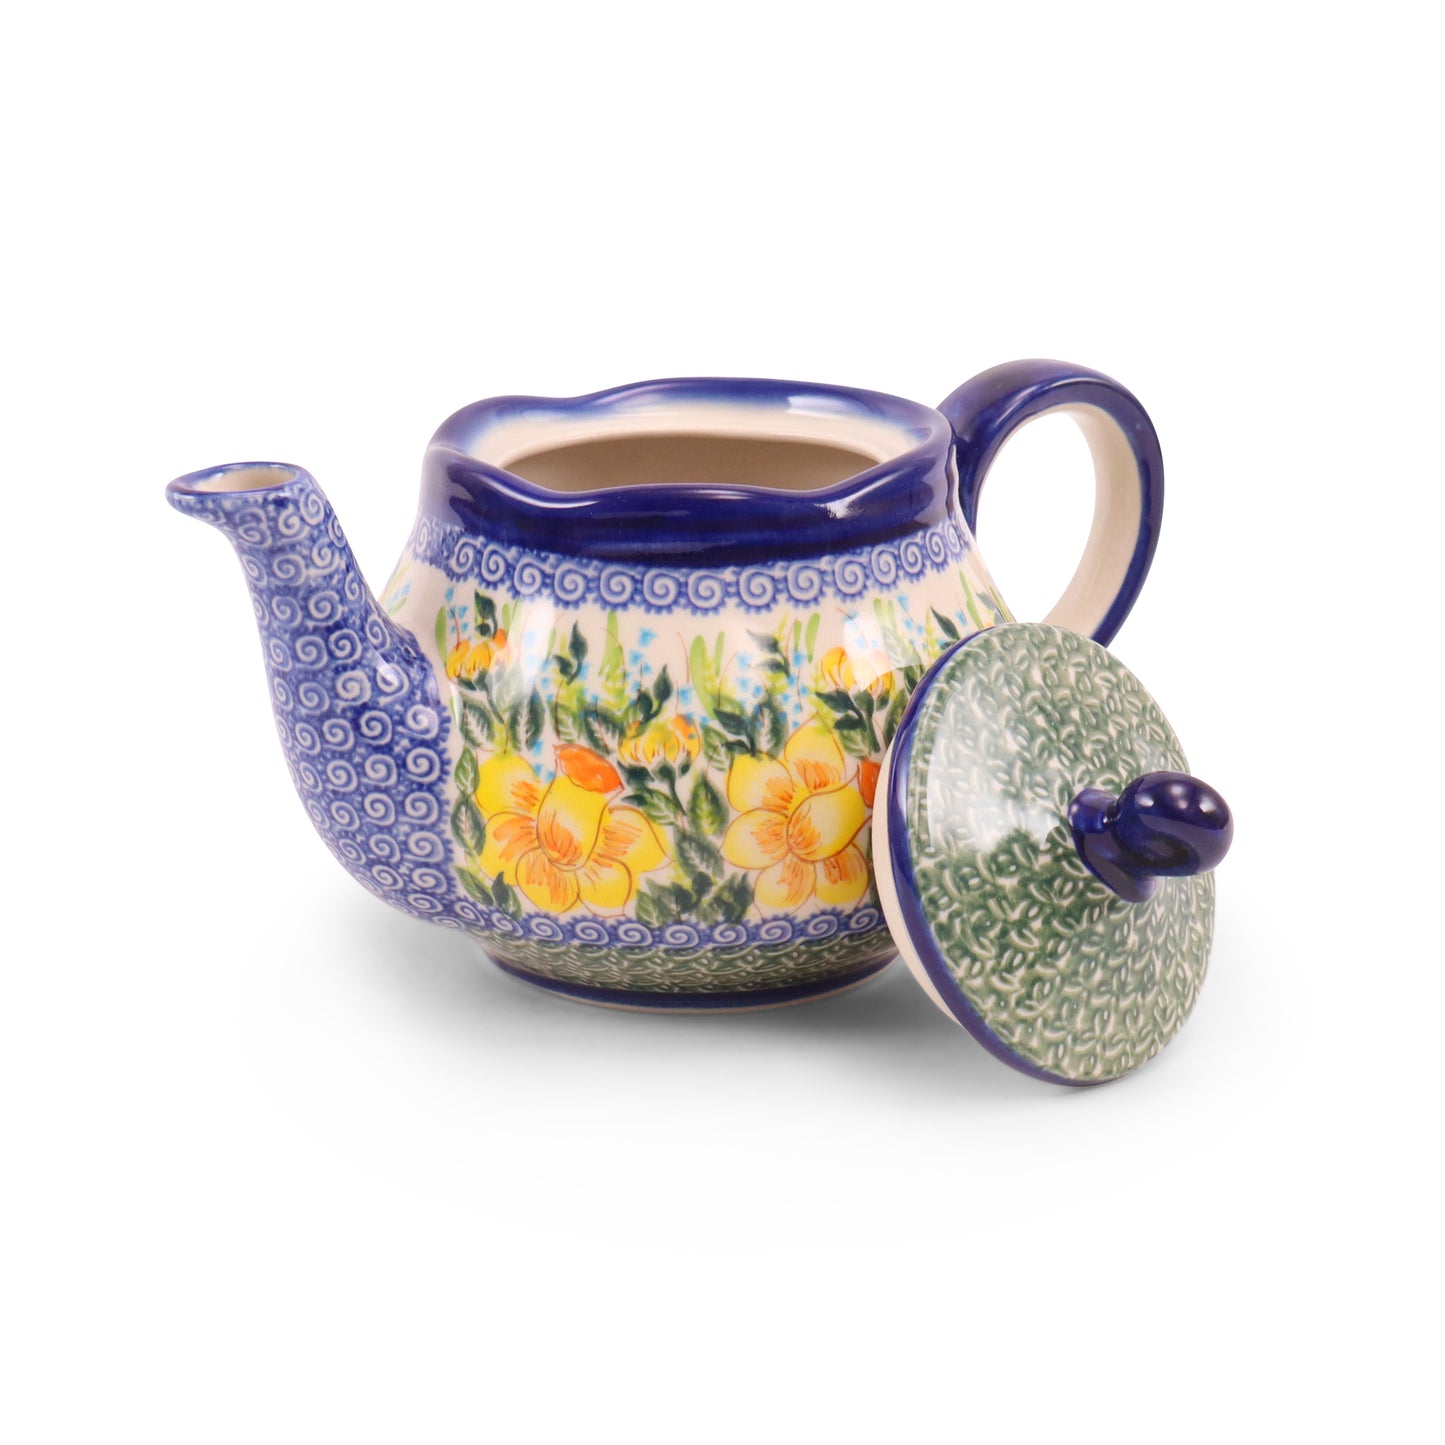 24oz Fruti Teapot. Pattern: Daffodil Full